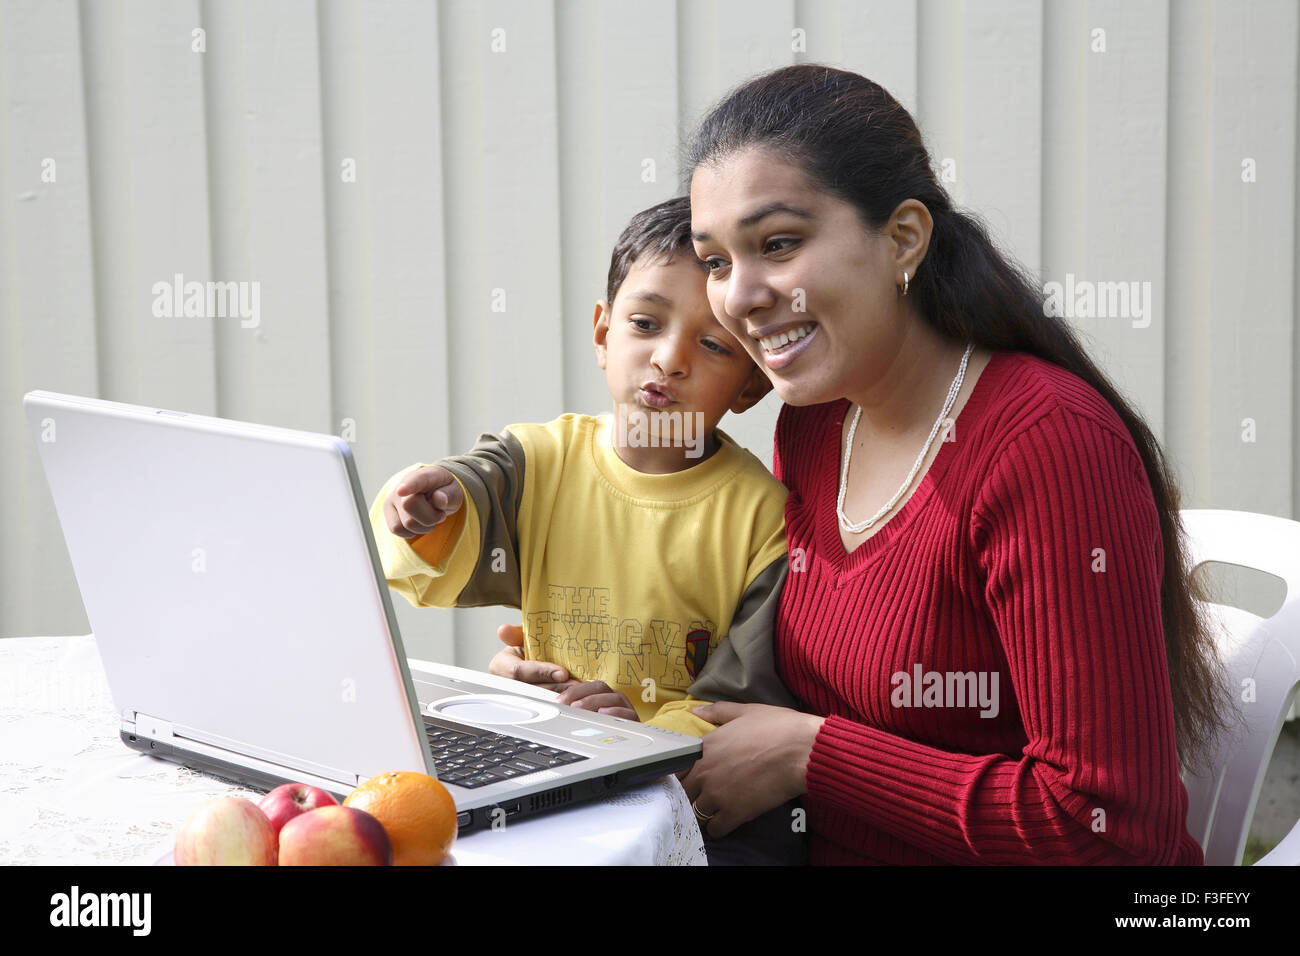 Chico apuntando con el dedo índice con la madre mirando a la pantalla del portátil se tocan los jefes MR#468 Foto de stock